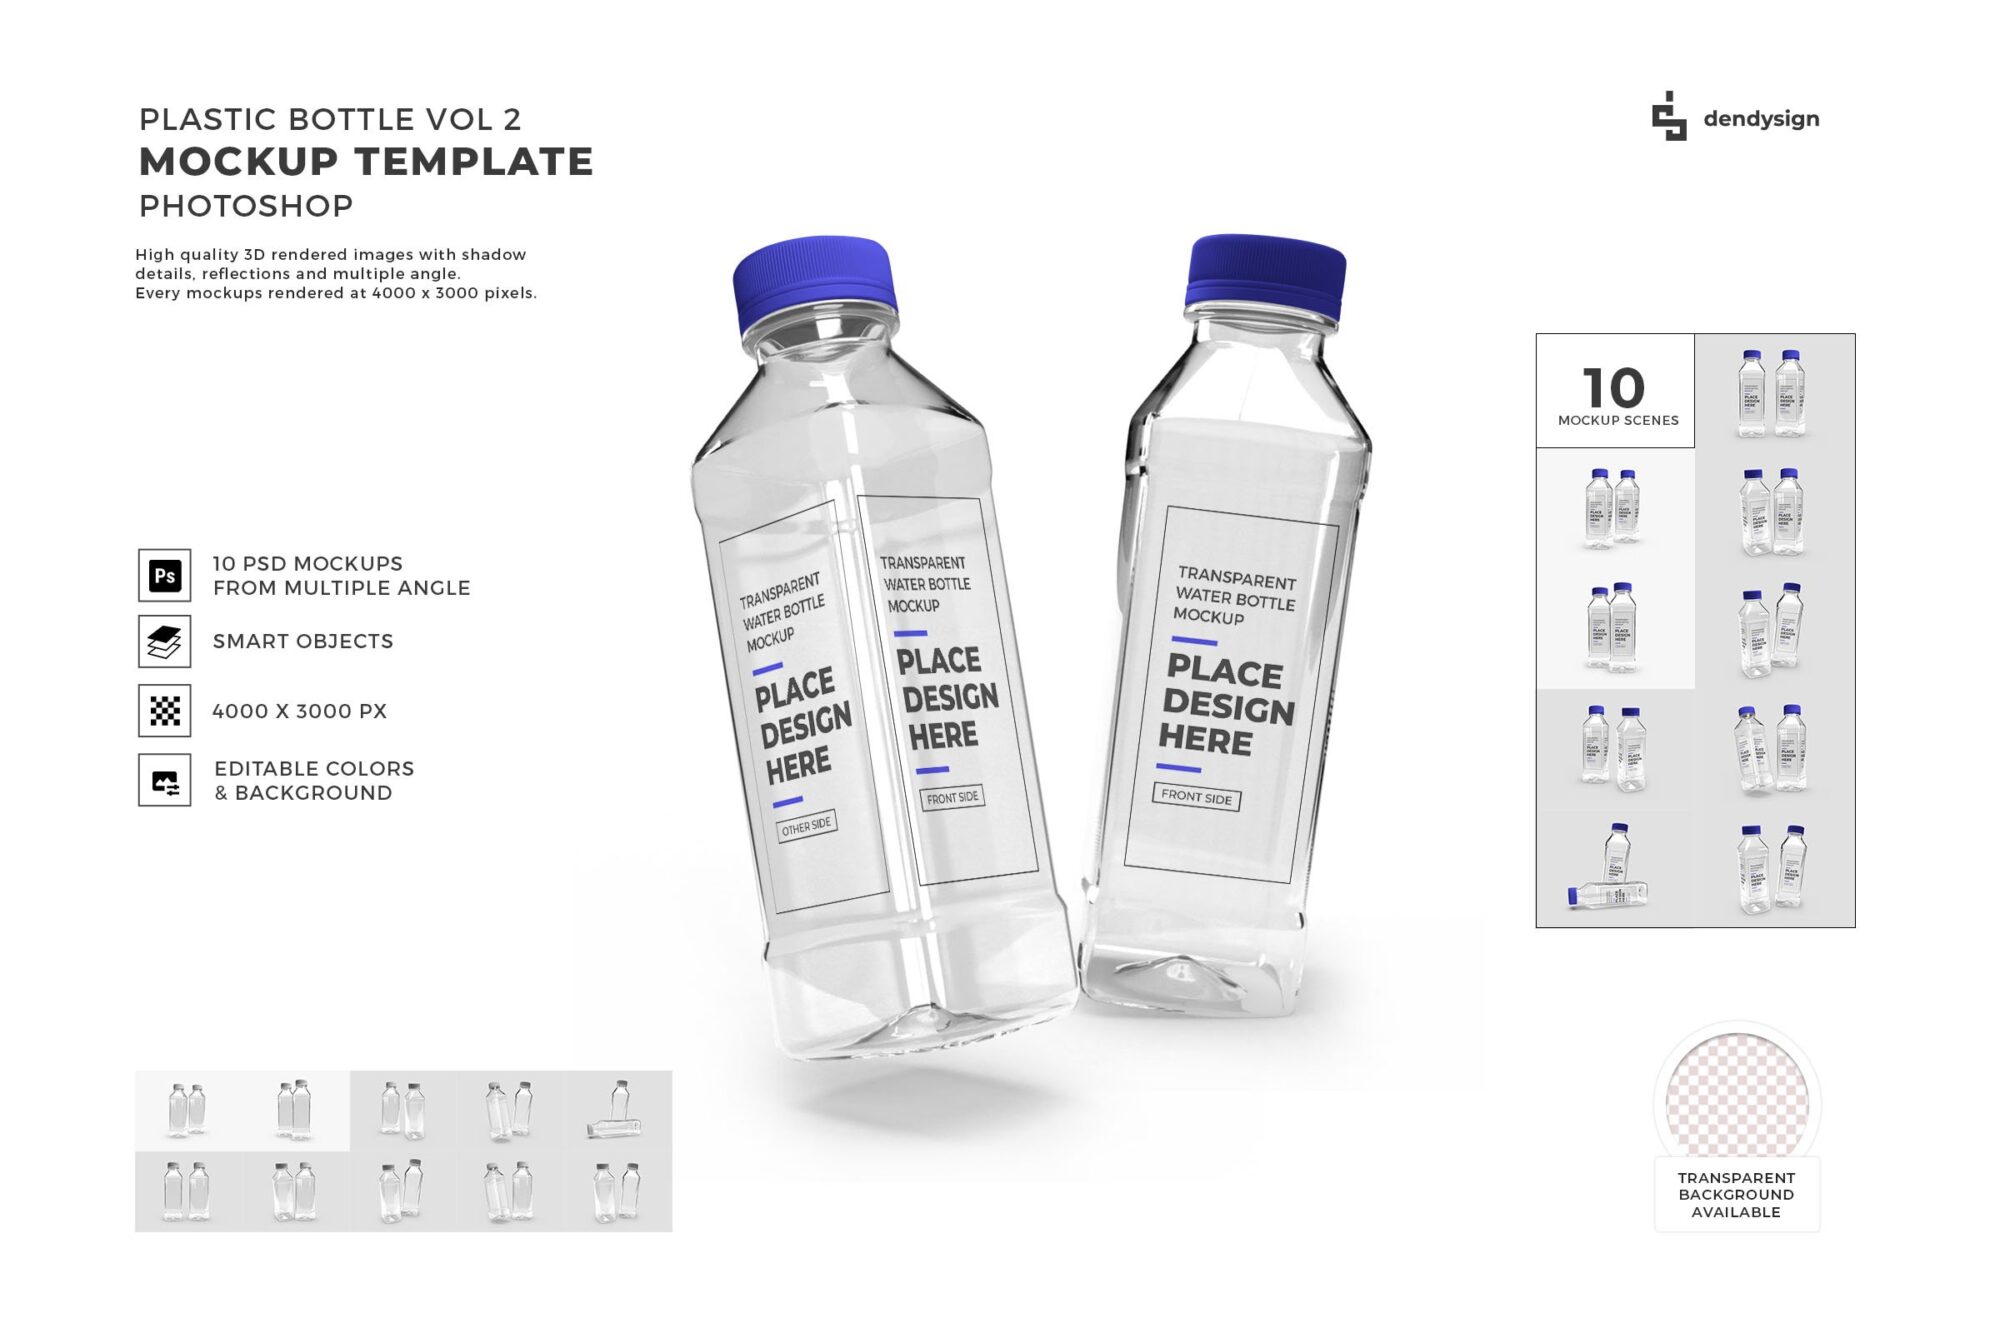 موك اب تغليف الزجاجات البلاستيكية الشفافة Transparent Plastic Bottle Packaging Mockup Vol 2 - 32552999